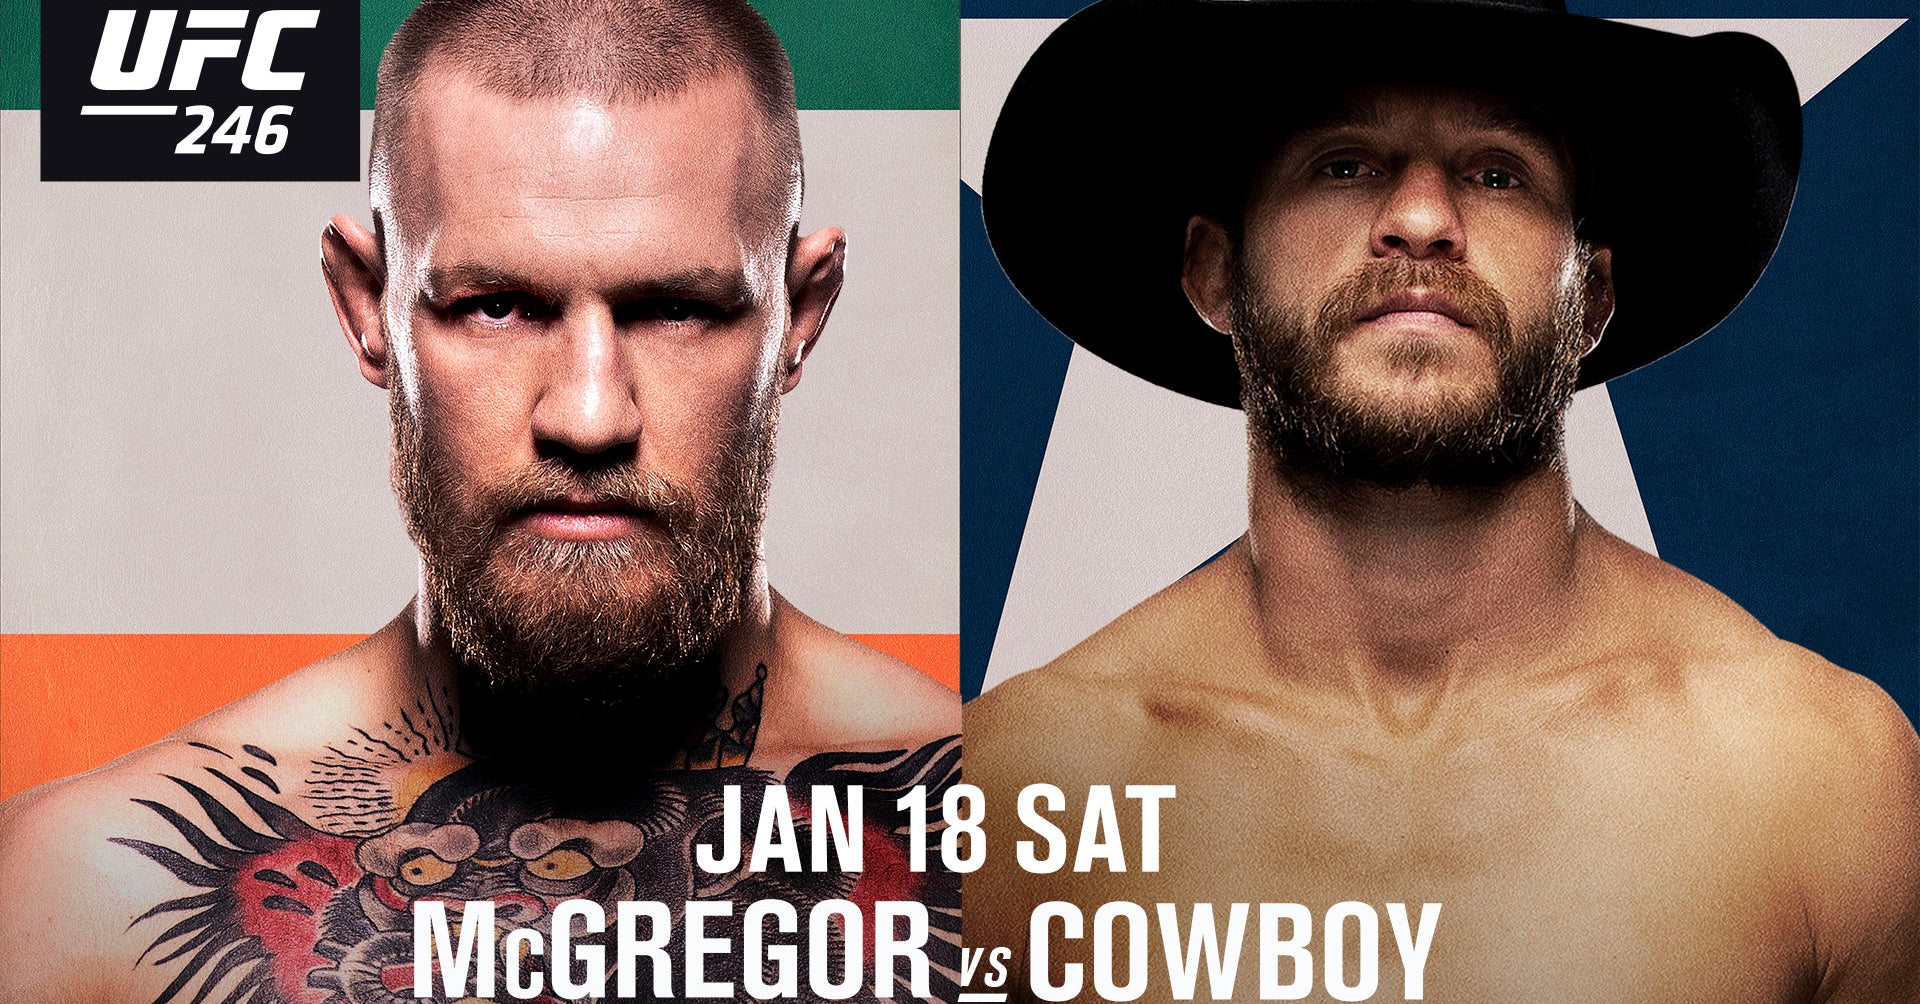 Next Fight 2020: Cowboy Cerrone vs Conor McGregor - UFC 246 - by SHEATH